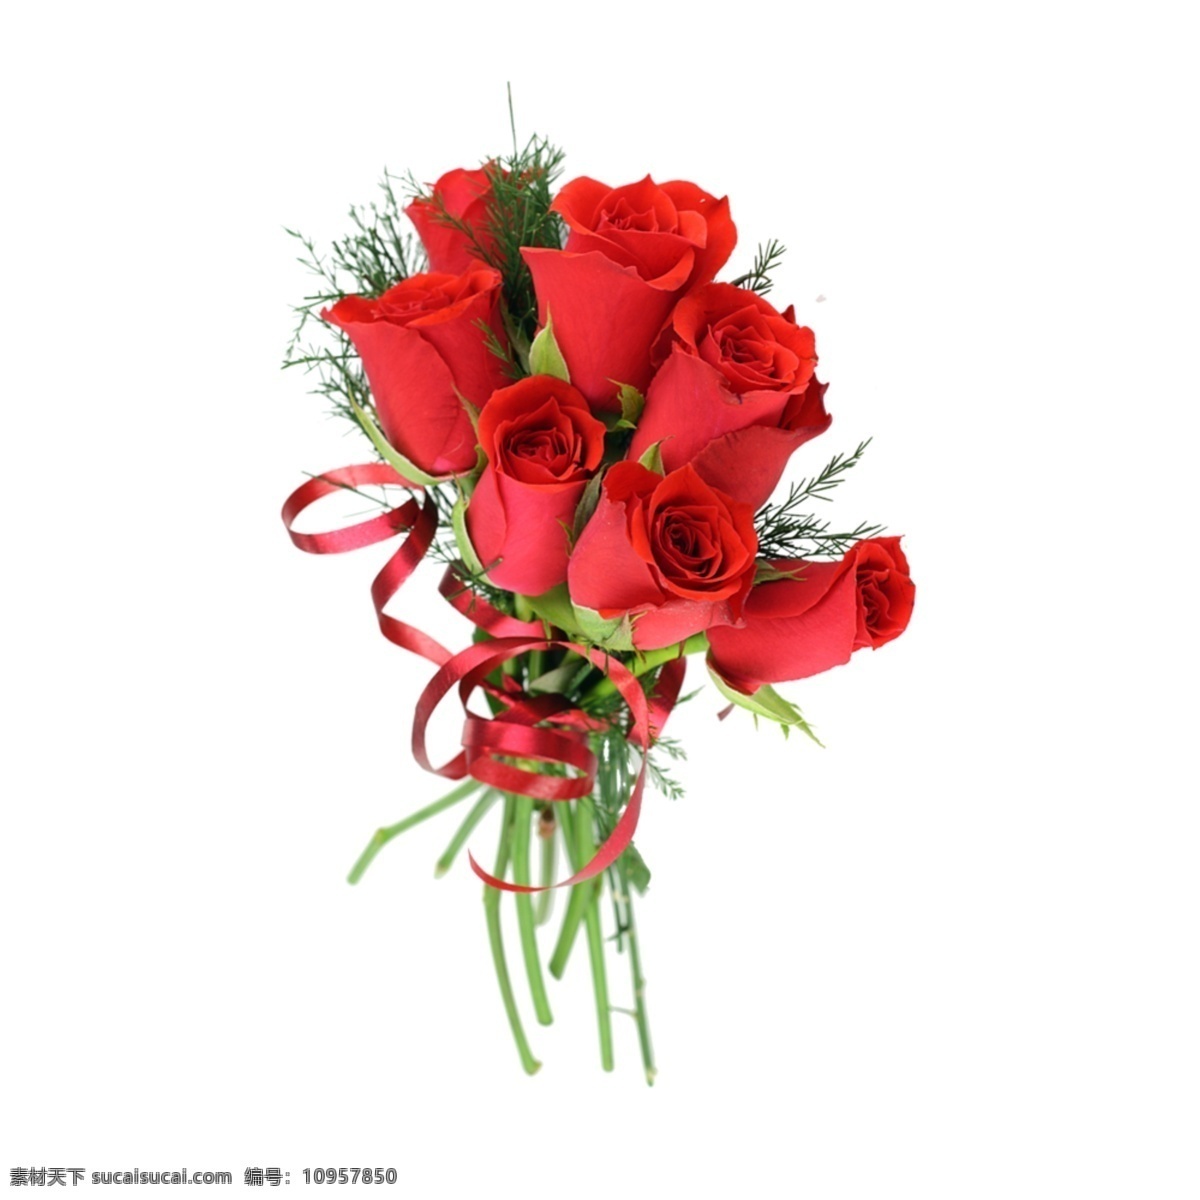 红色玫瑰花 红色 玫瑰花 花束 花店 红玫瑰 绿枝 花素材